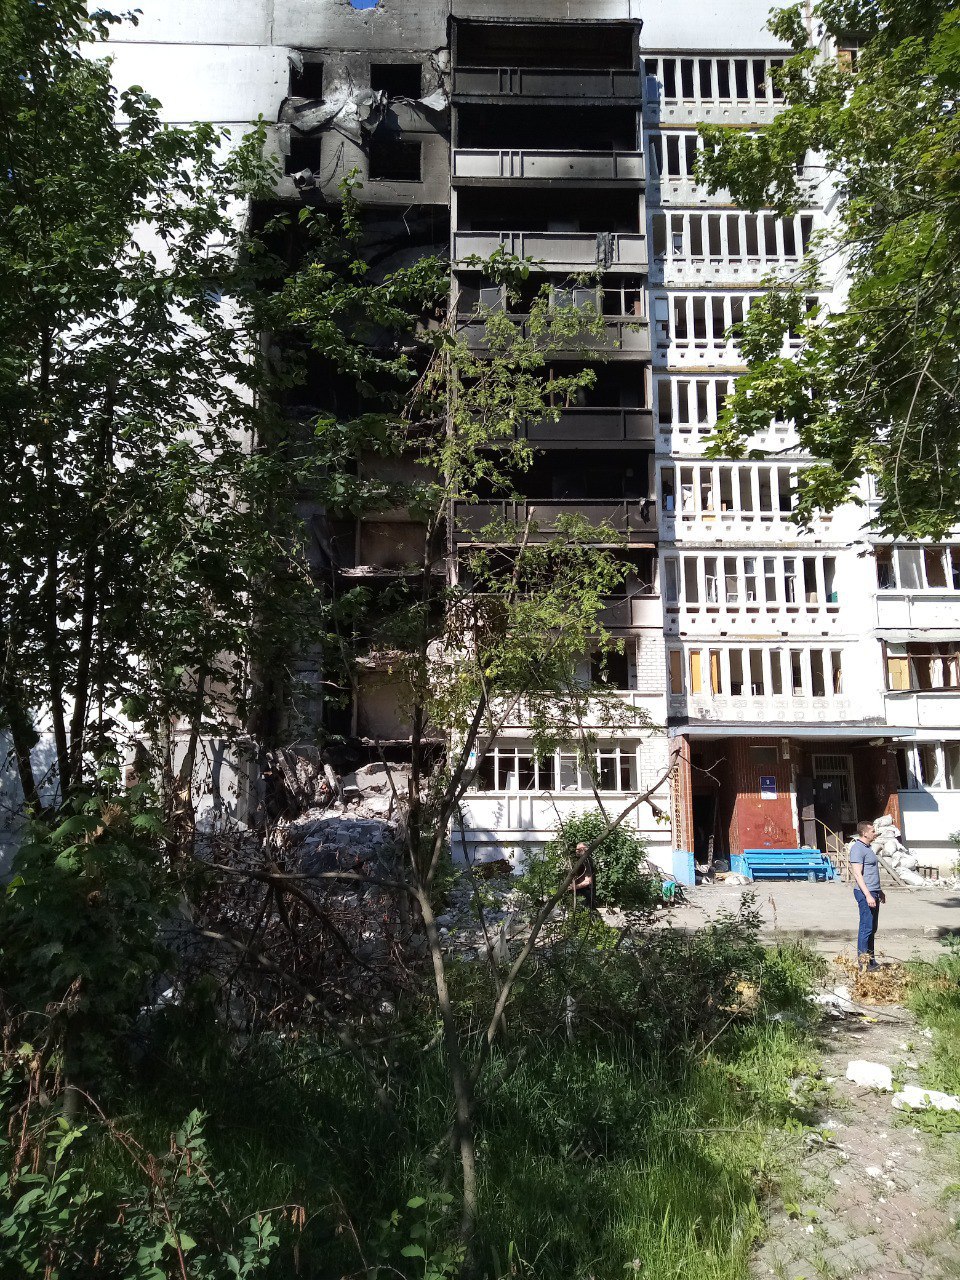 Дом на улице Метростроителей в Харькове после обстрелов